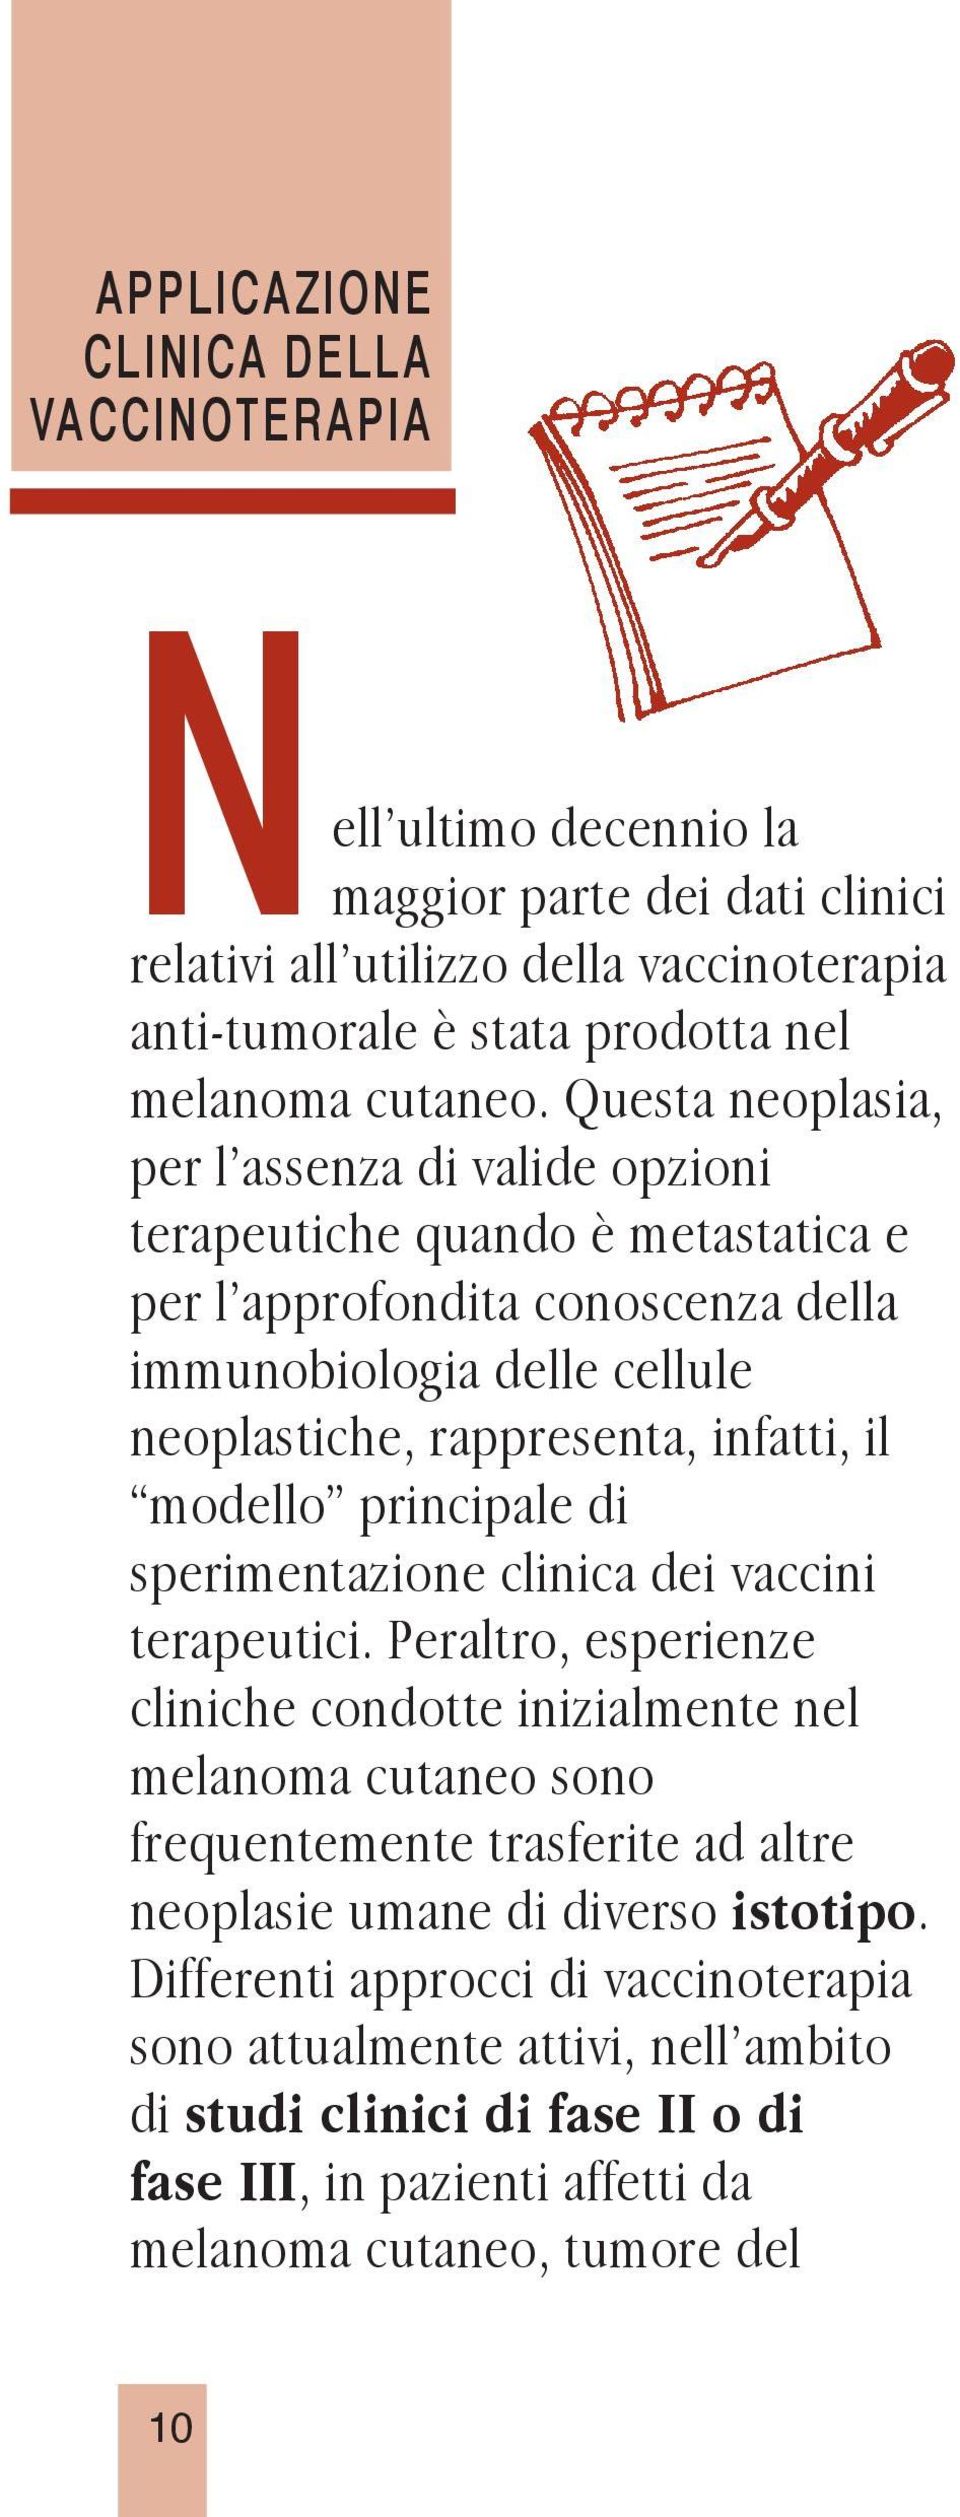 modello principale di sperimentazione clinica dei vaccini terapeutici.